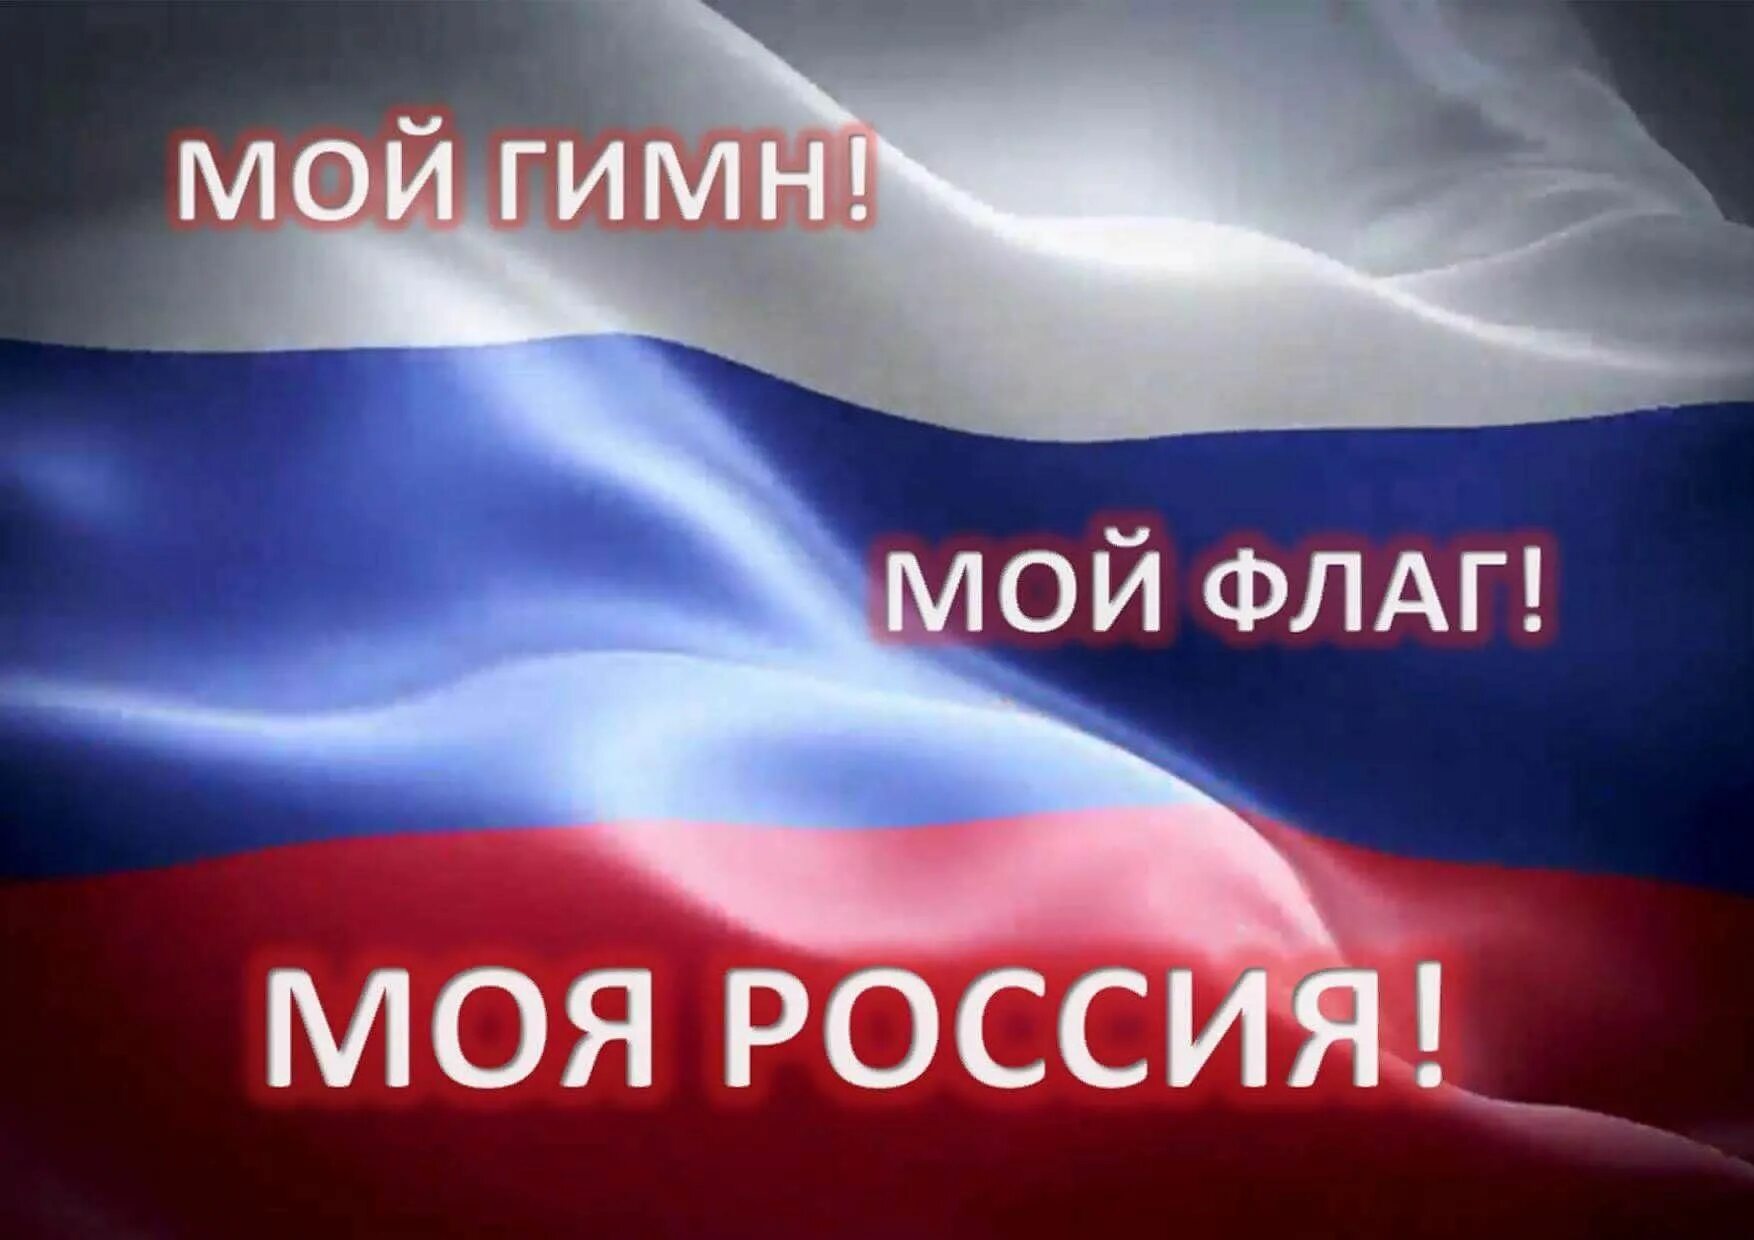 Моя Россия. Флаг России моя Россия. Мой флаг моя Россия. Мой гимн мой флаг моя Россия.